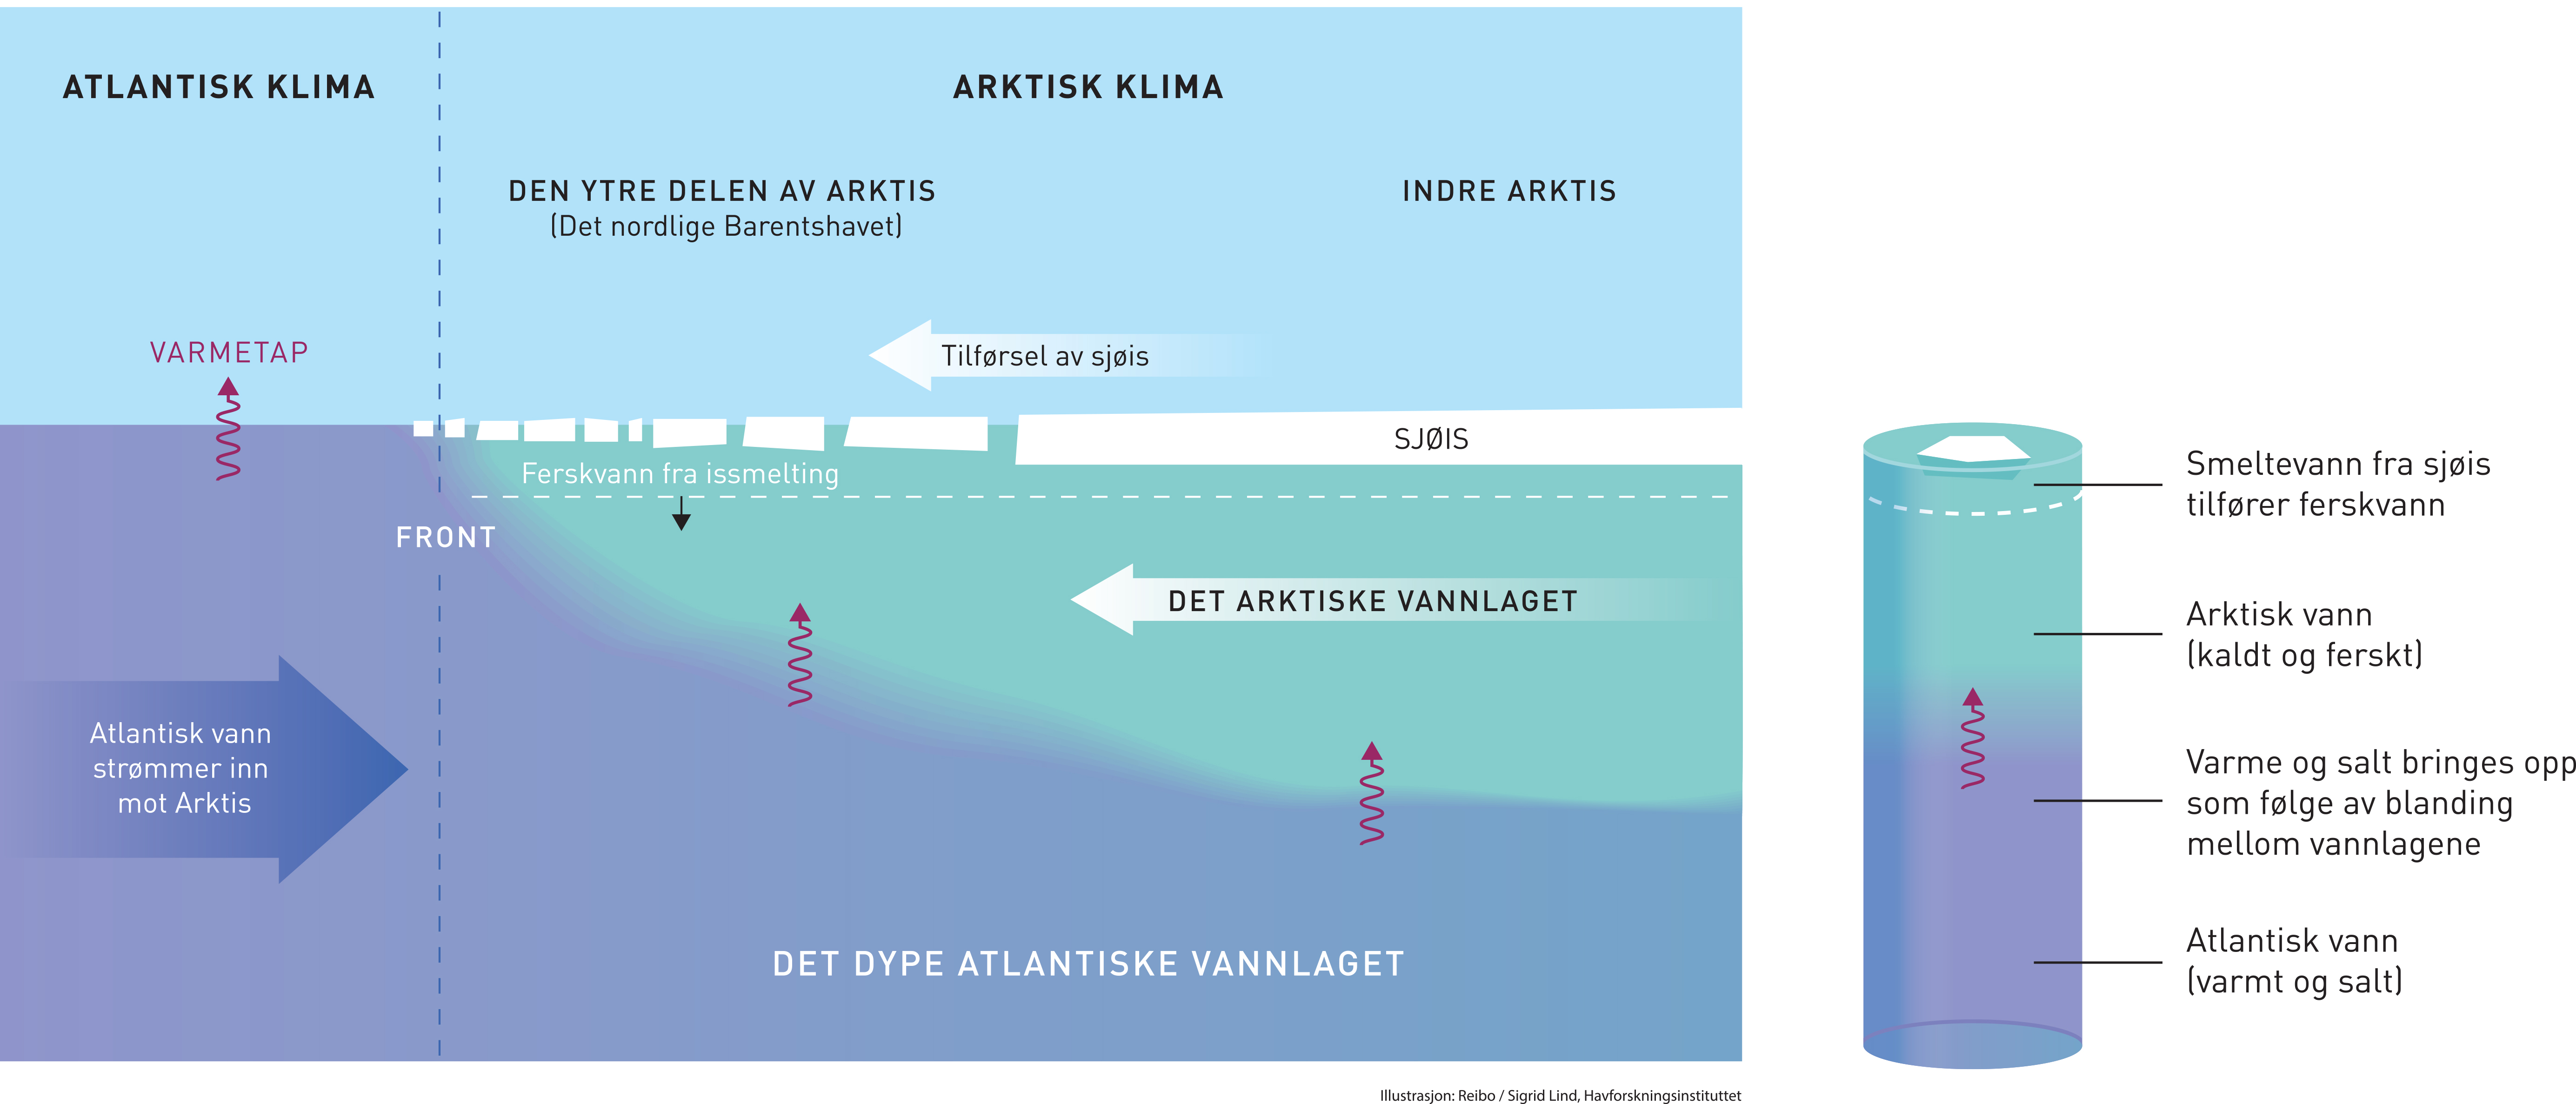 Fra arktisk til atlantisk klima